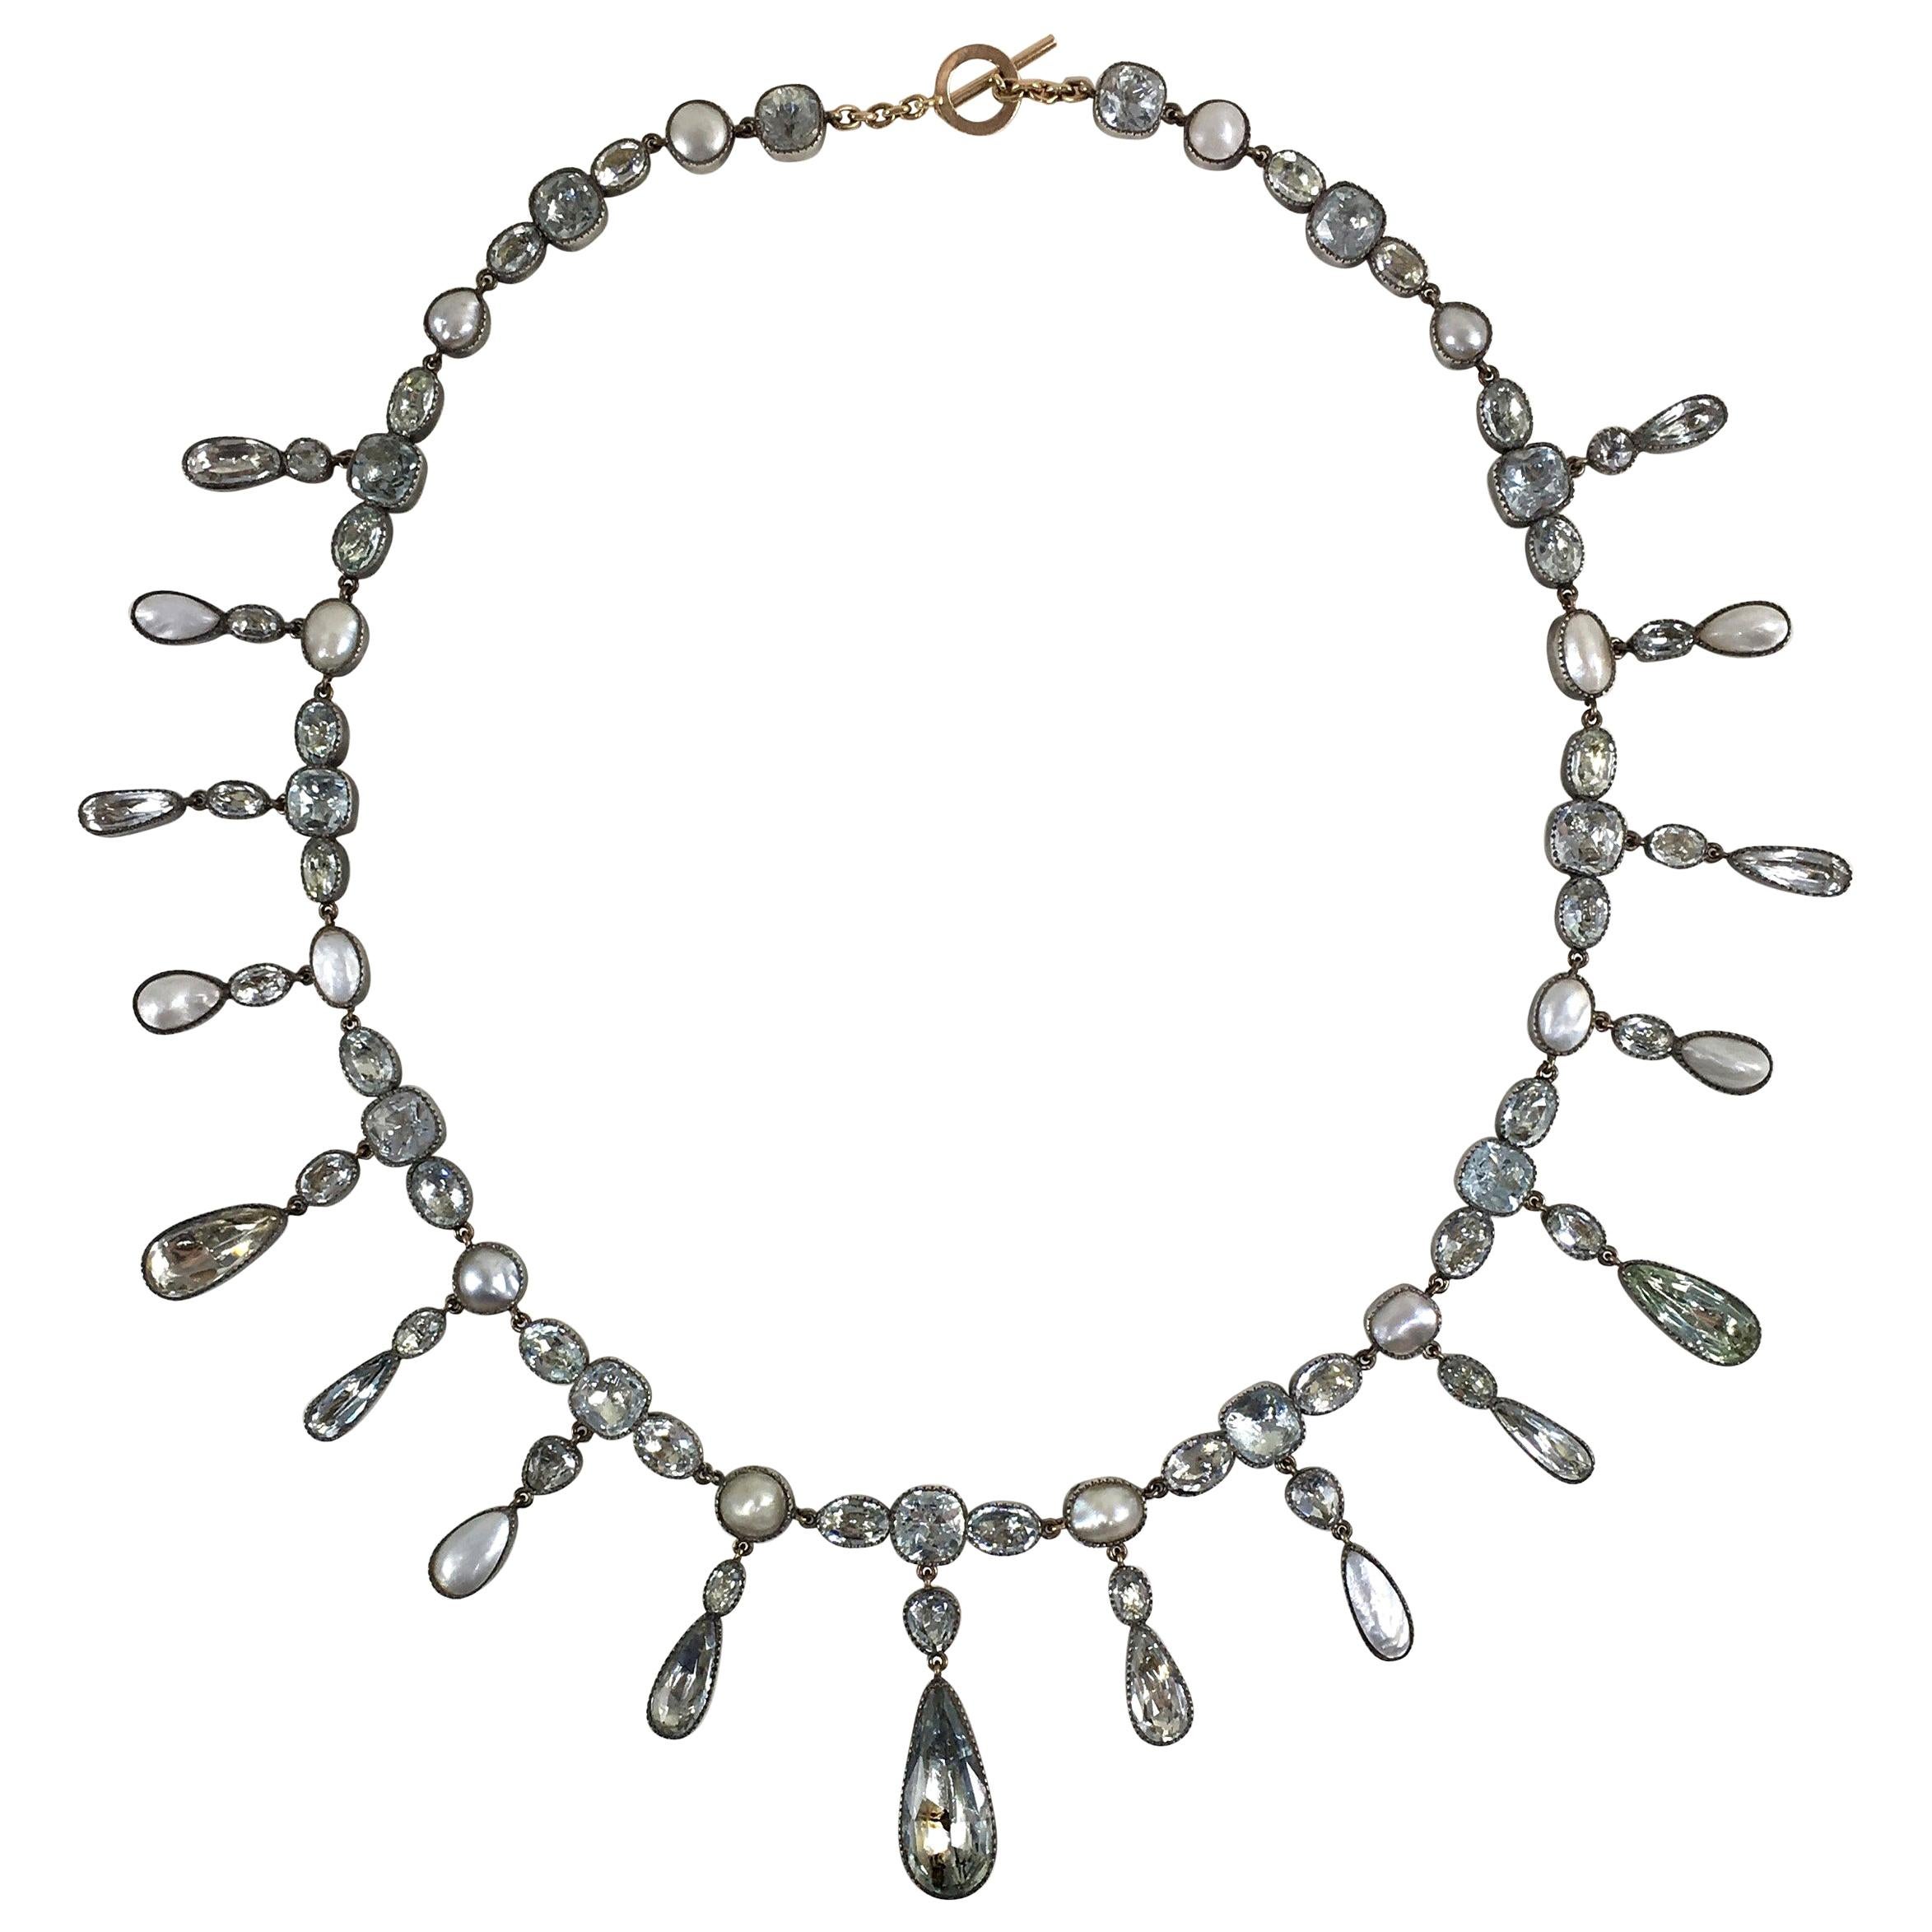 1820 Halskette mit Riviere-Anhänger, georgianischer blauer Aquamarin, weiße Perle Silber Fransen